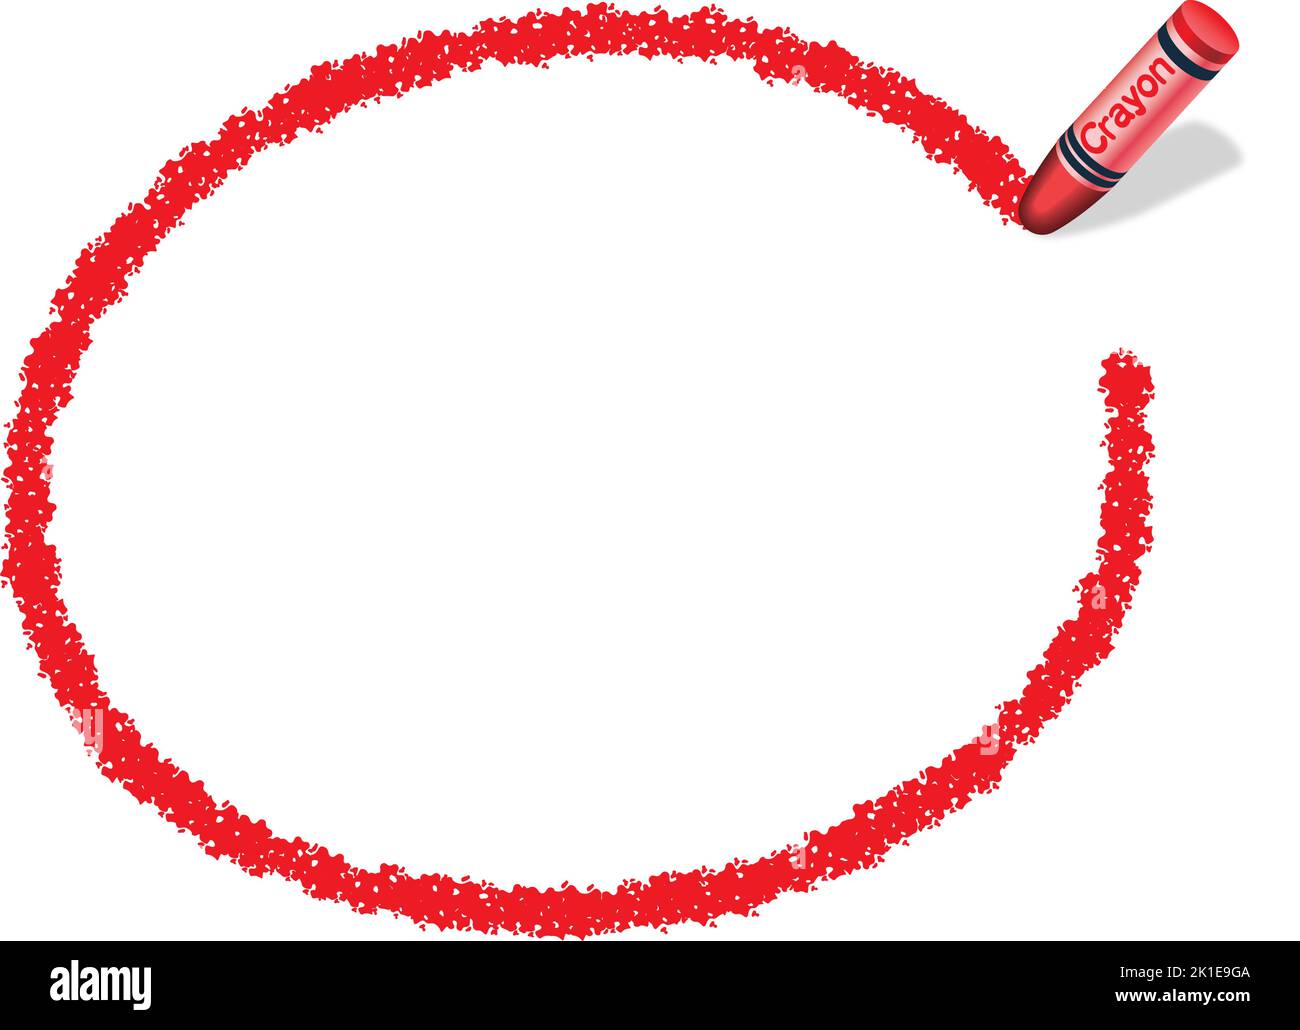 Vektor handgezeichneter roter ovaler Crayon-Texturrahmen isoliert auf Weißem Hintergrund. Stock Vektor